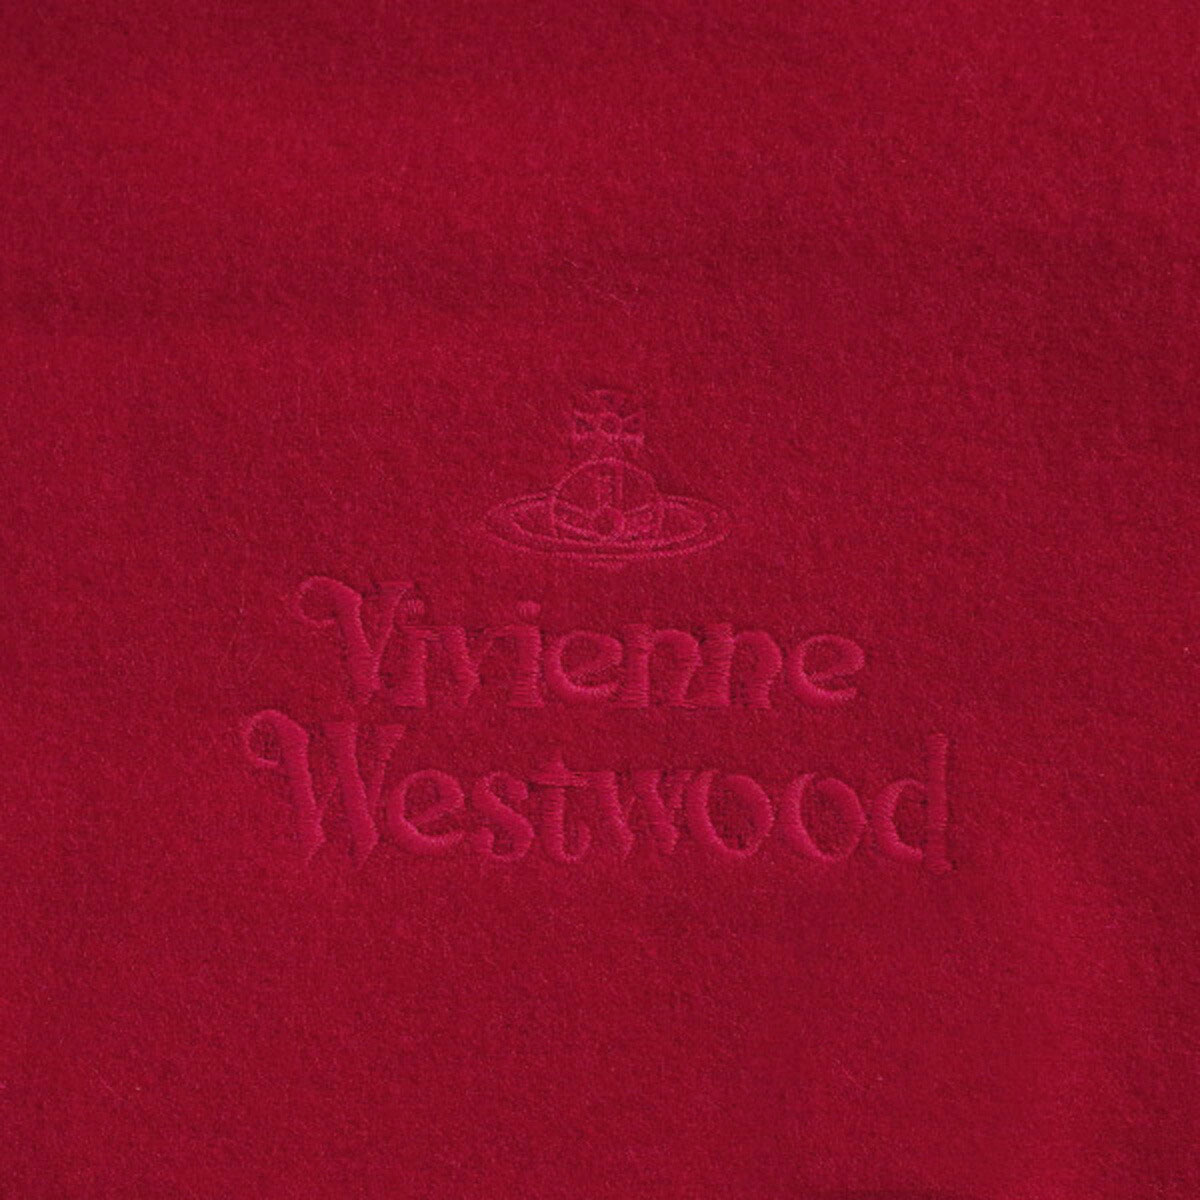 ヴィヴィアンウエストウッド Vivienne Westwood マフラー メンズ レディース 81030007 11654 h401 ウールマフラー ストール RED レッド